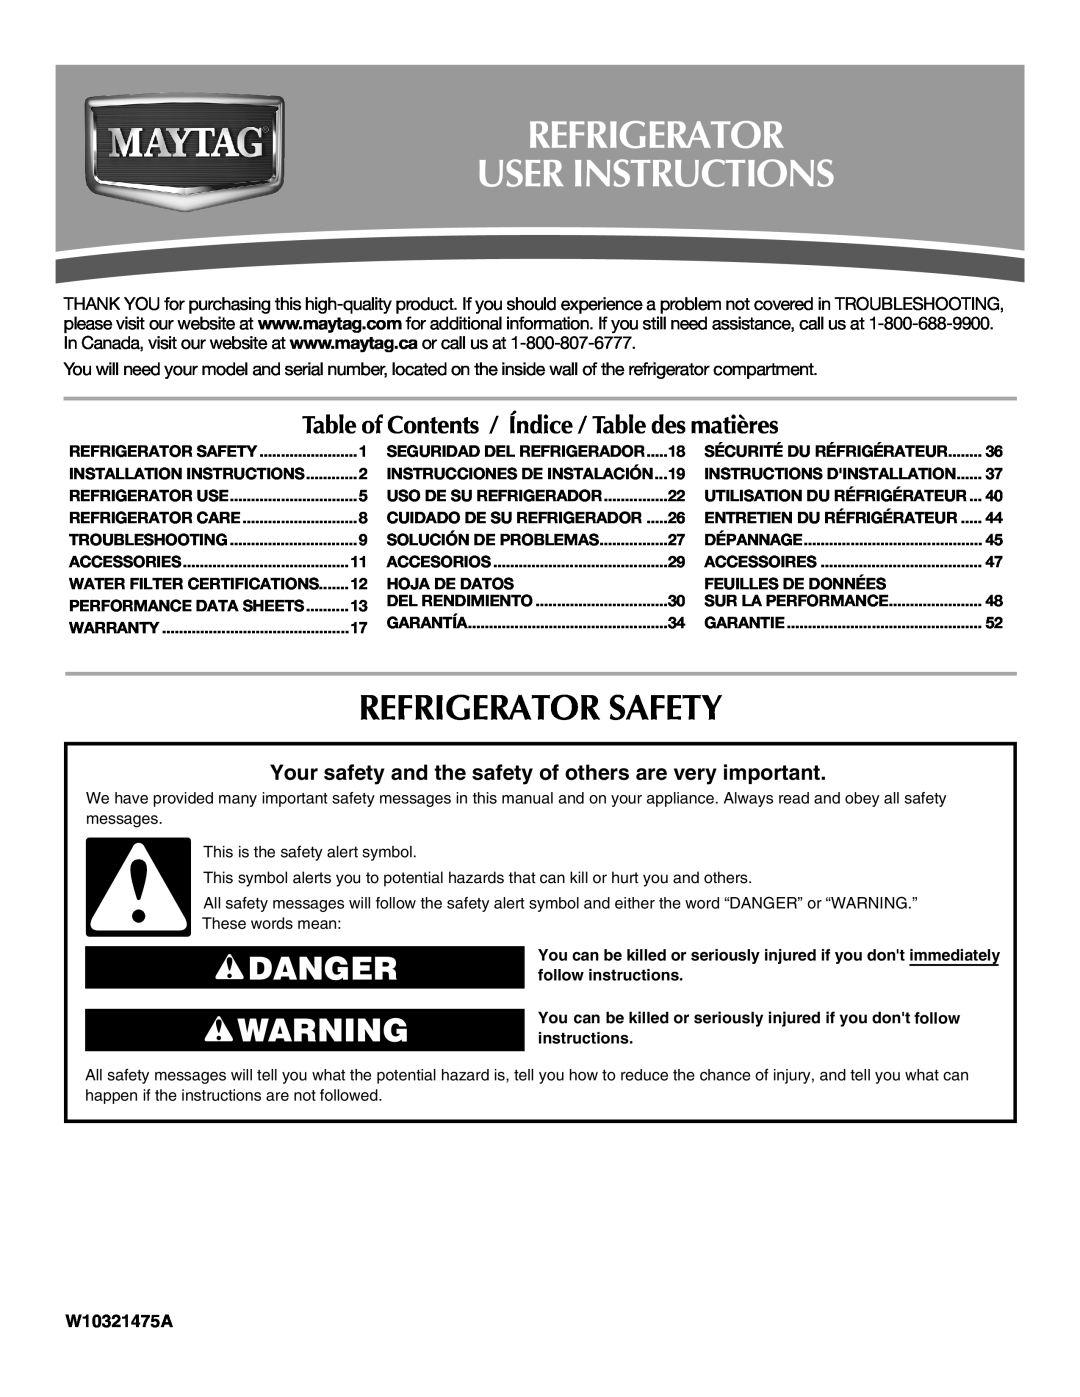 Maytag W10321475A installation instructions Refrigerator User Instructions, Refrigerator Safety, Danger 